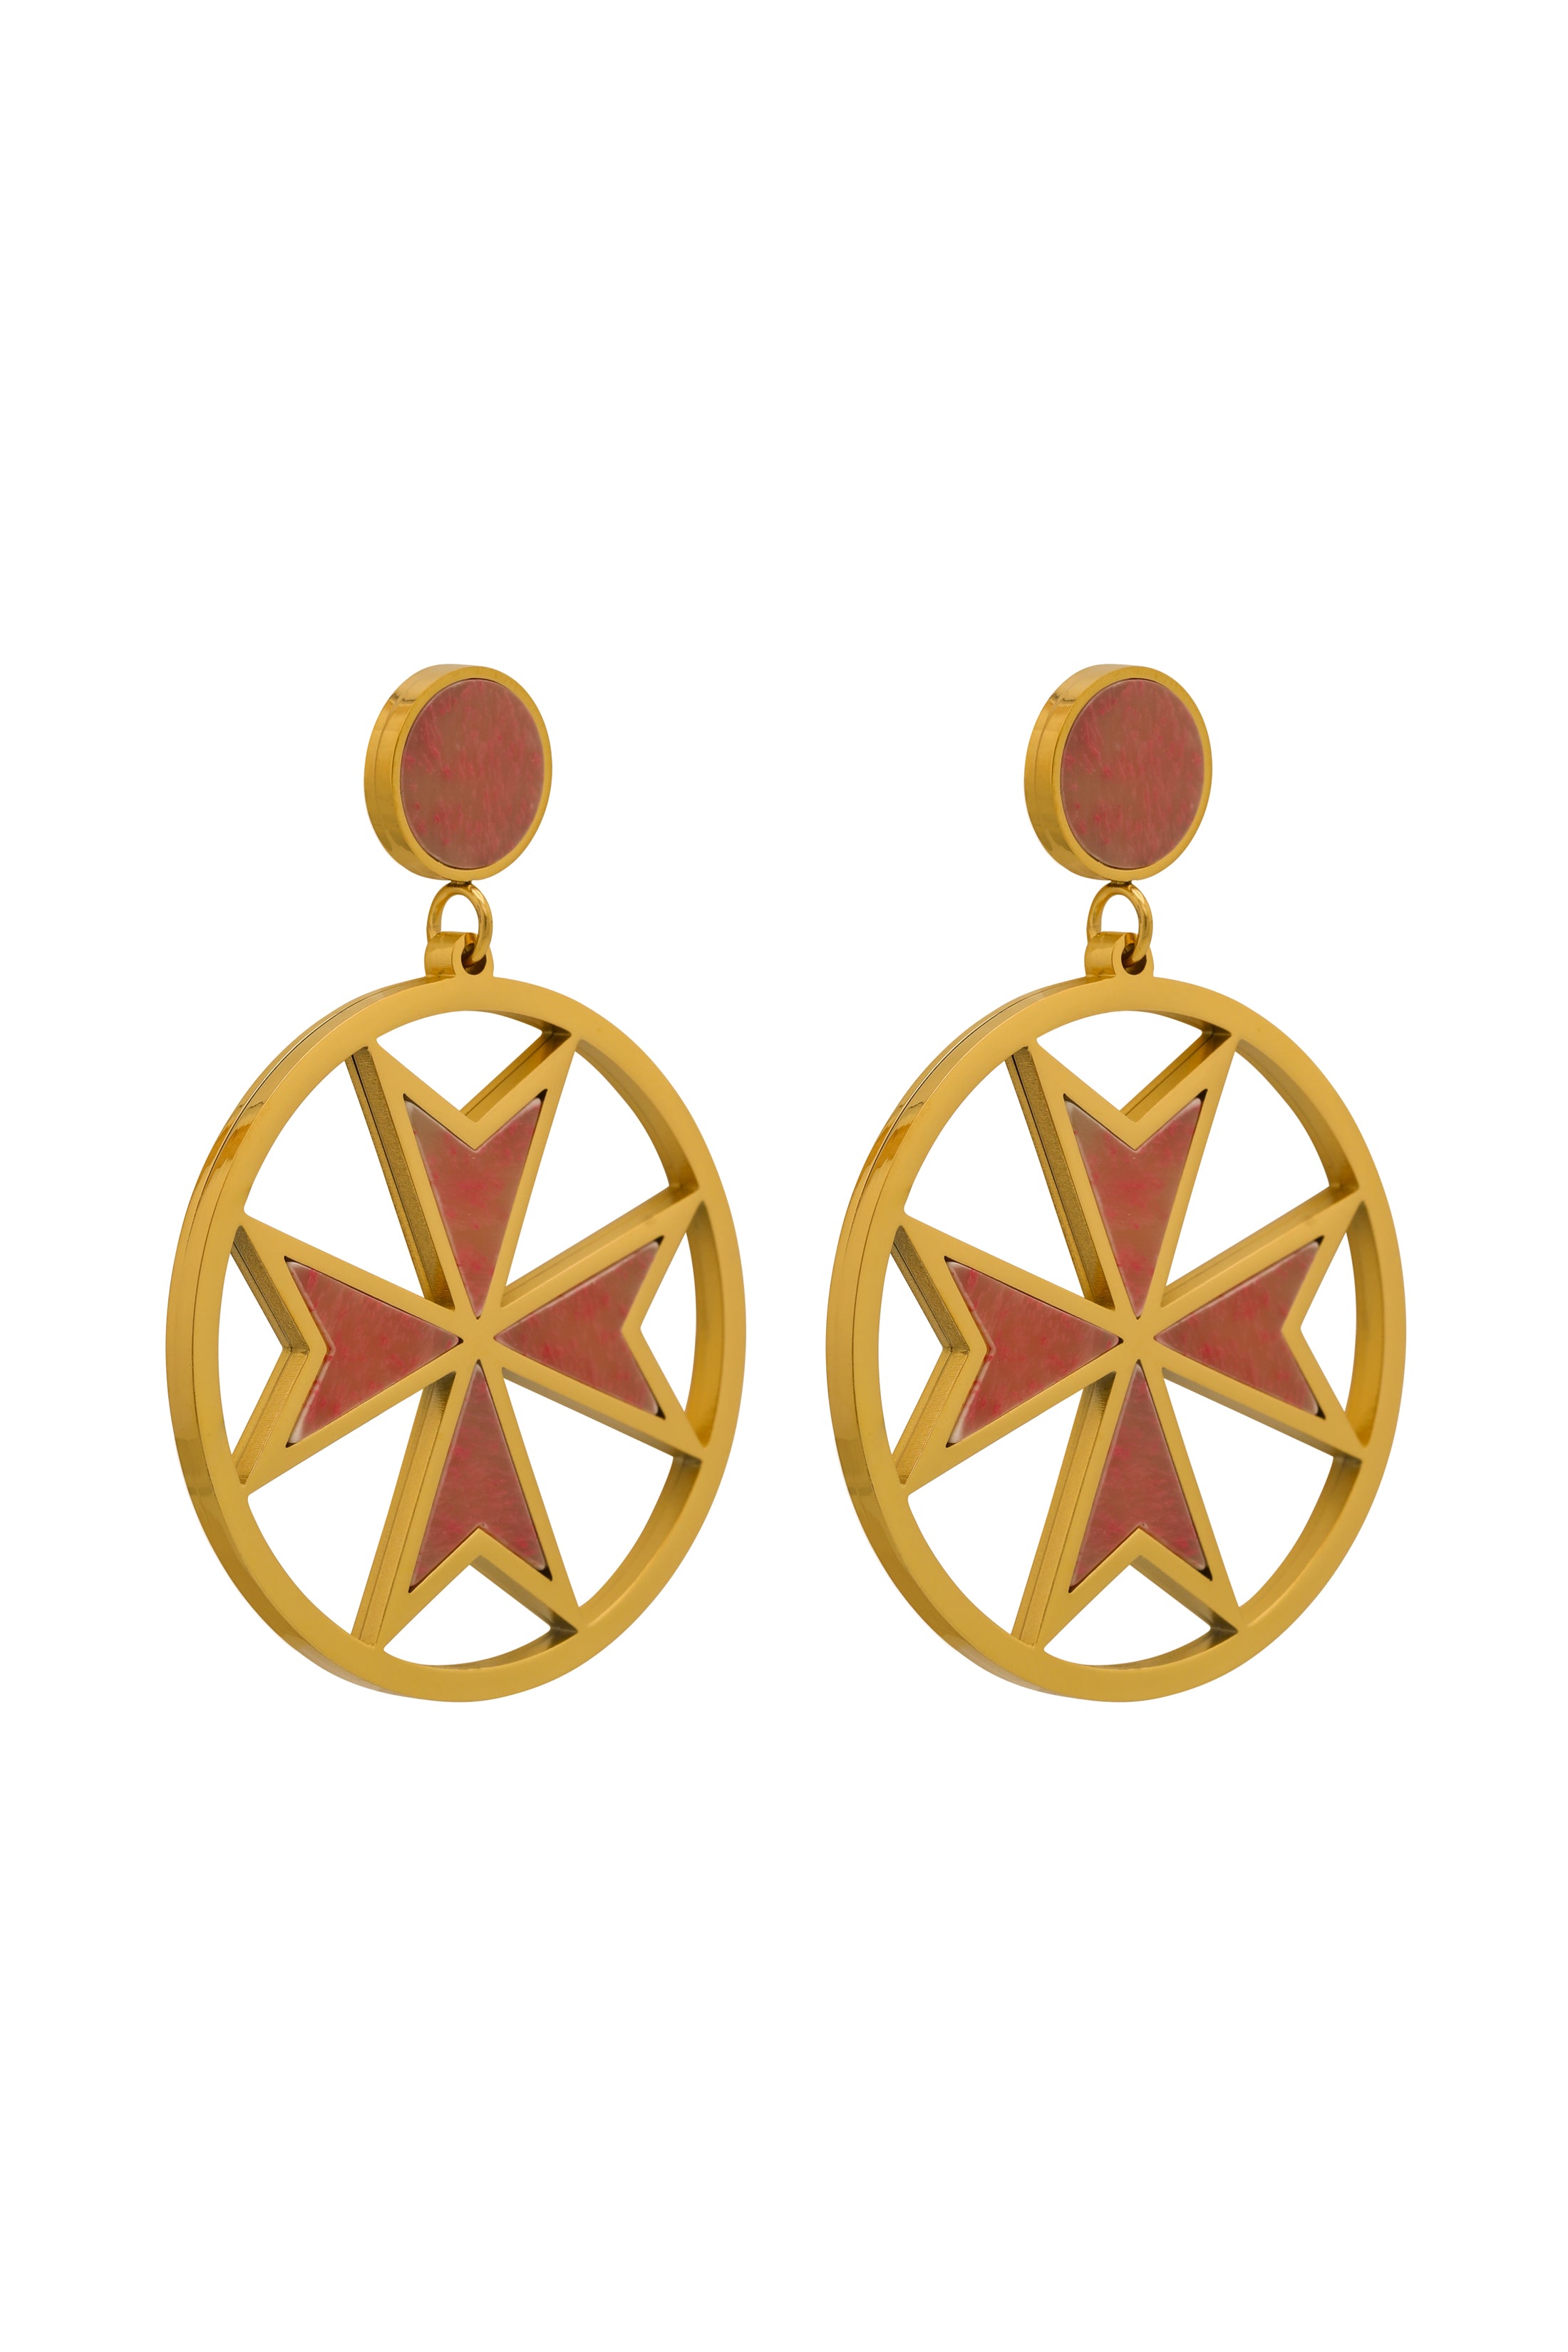 The Pink Marble Maltese Cross Pendant &amp; Earrings Gift Set